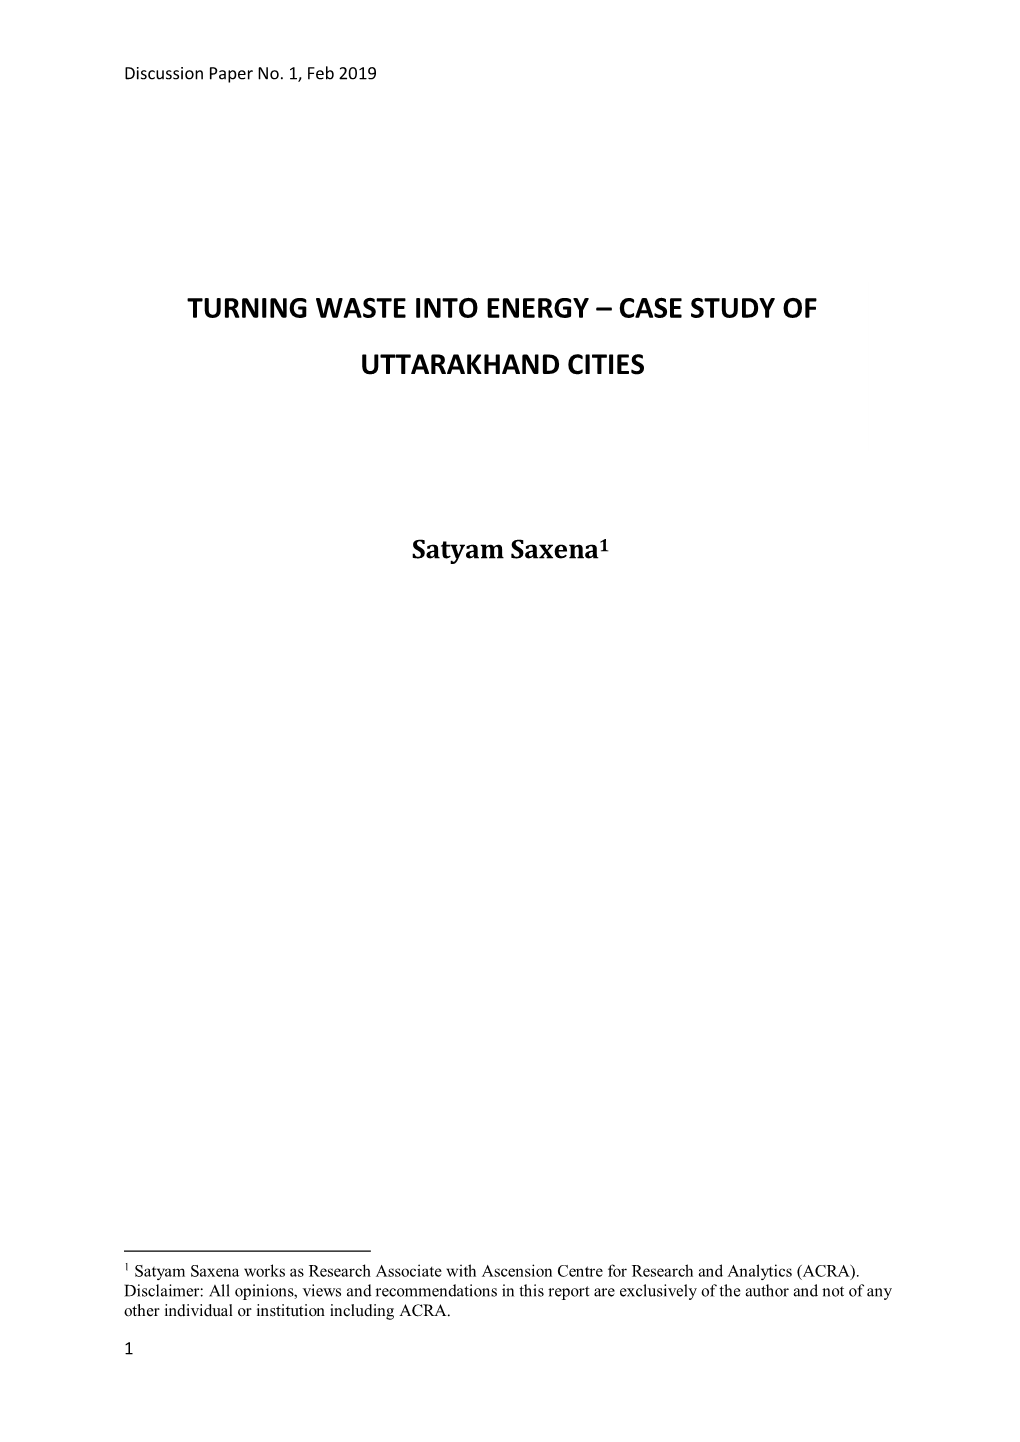 Turning Waste Into Energy – Case Study of Uttarakhand Cities2